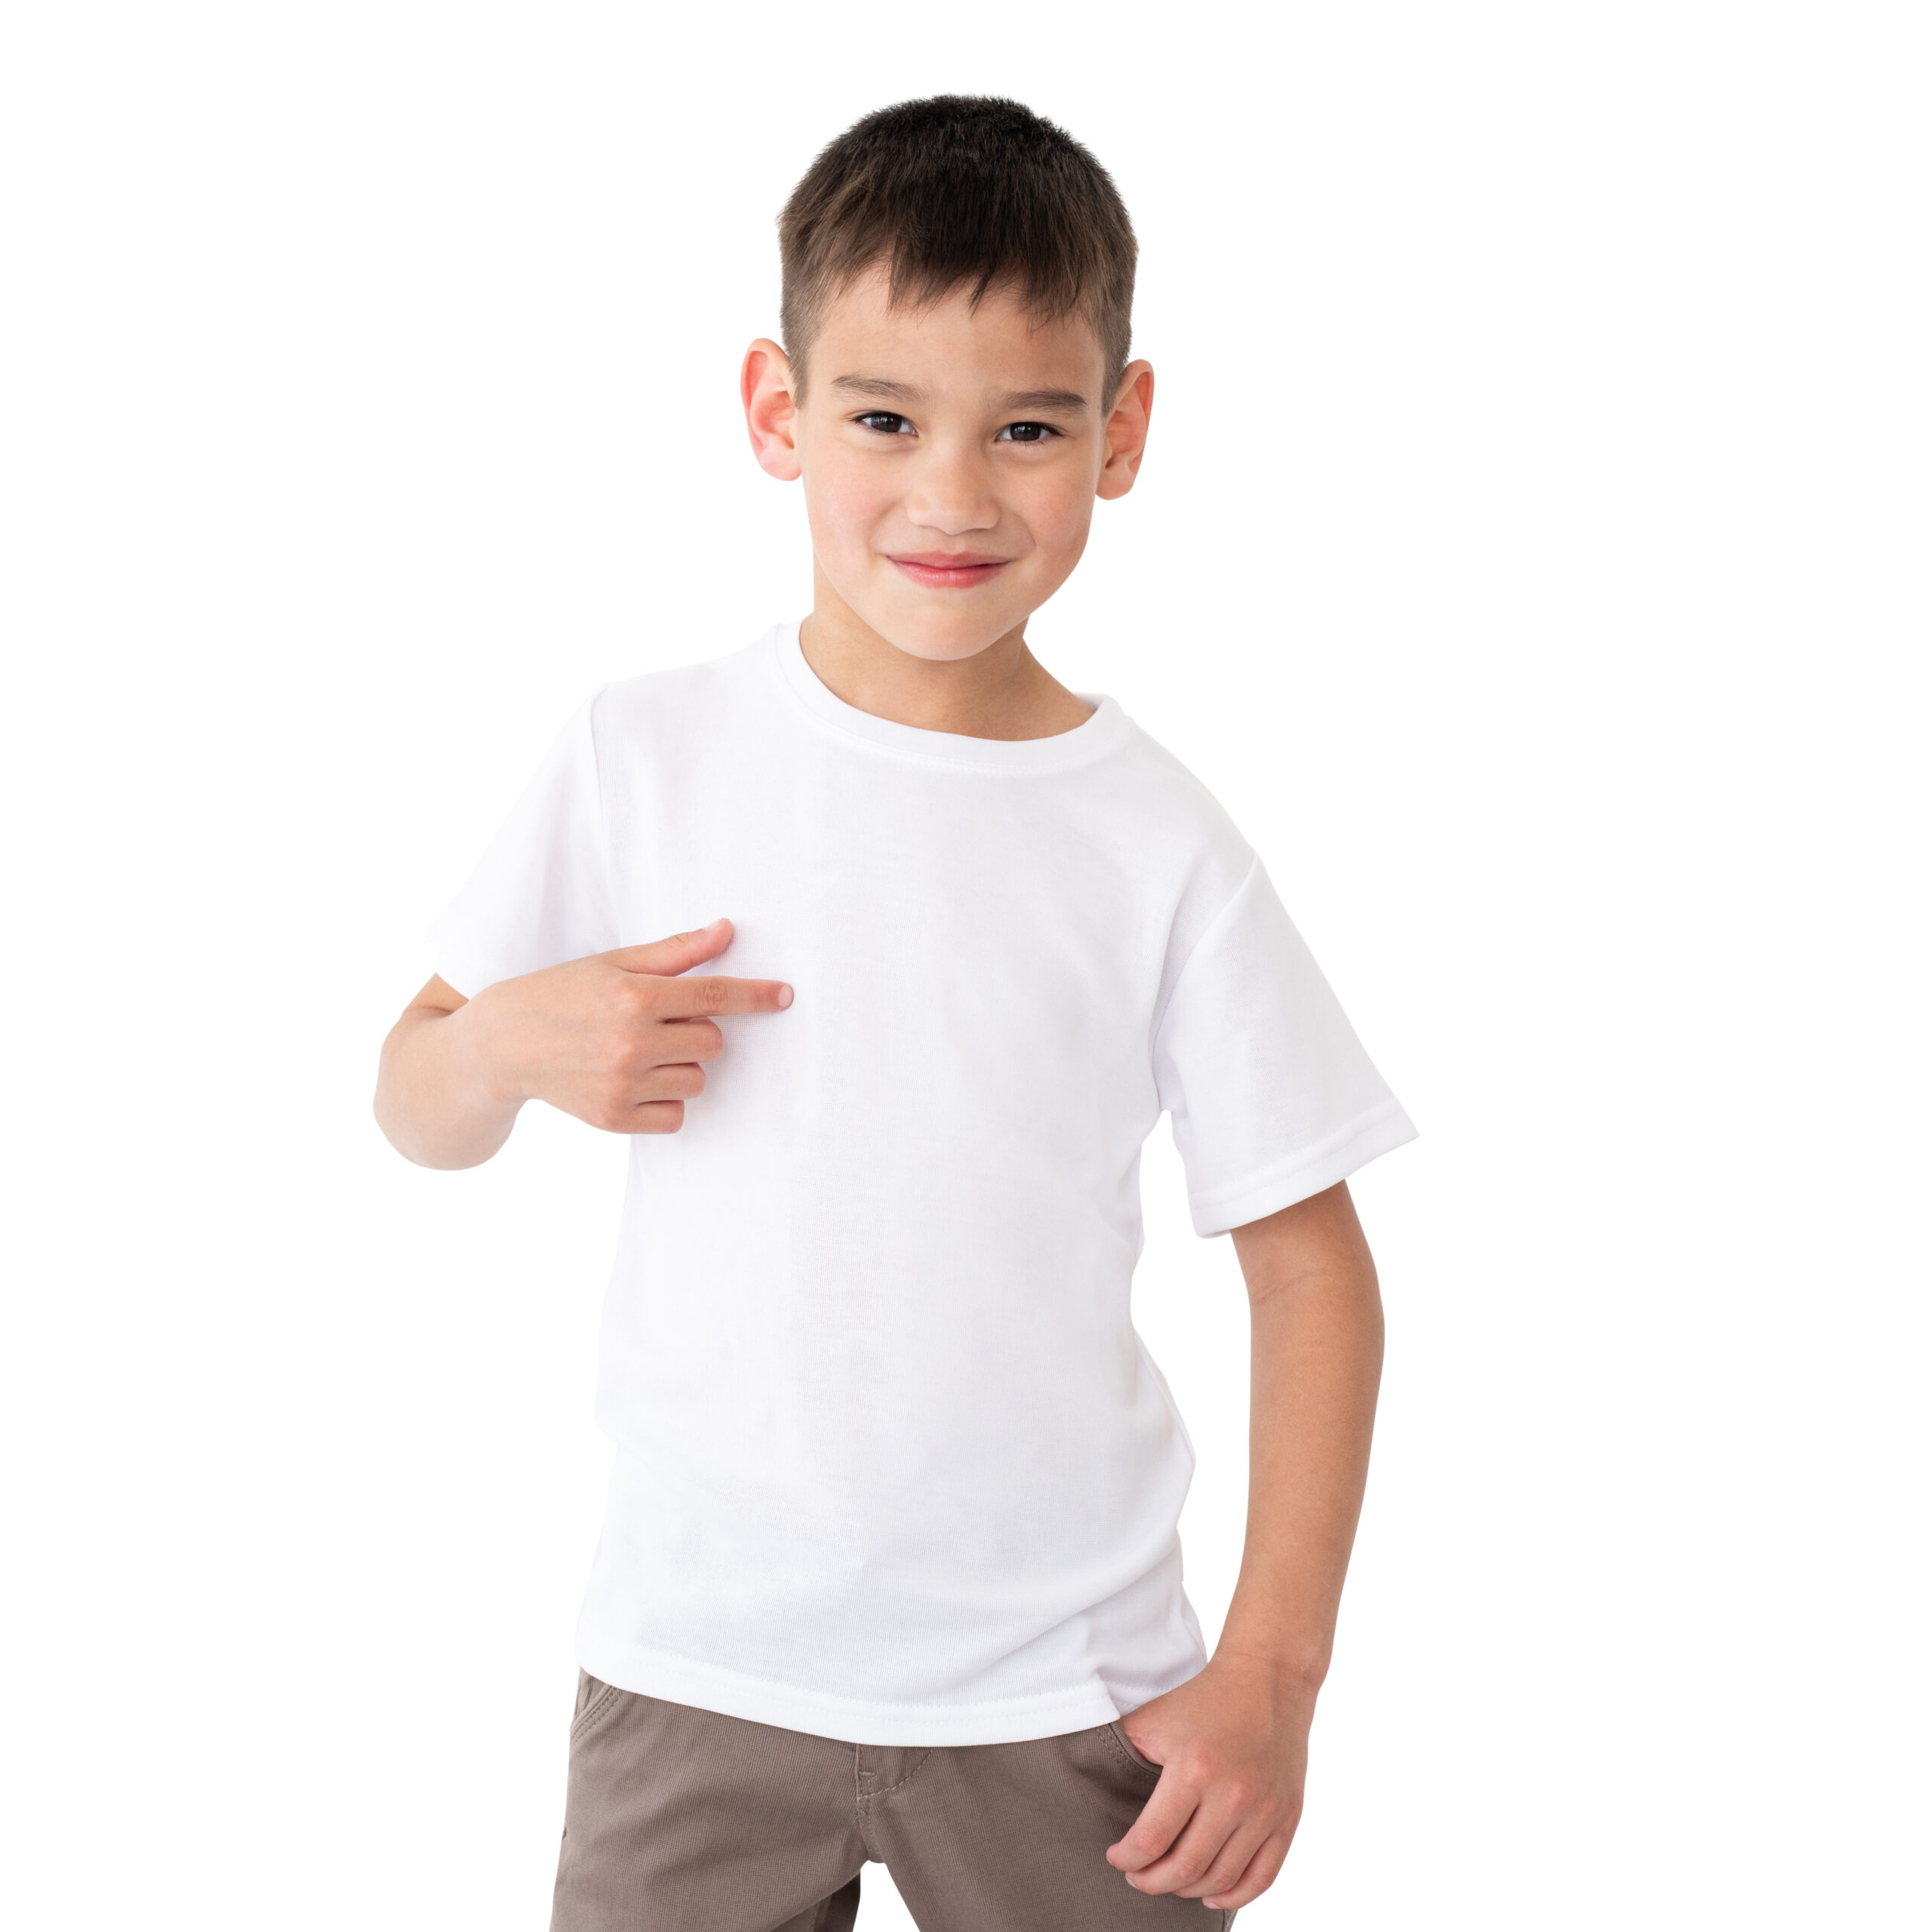 Sublimation BLANK 50/50 T-Shirt - Adult MEDIUM White - AGC Education